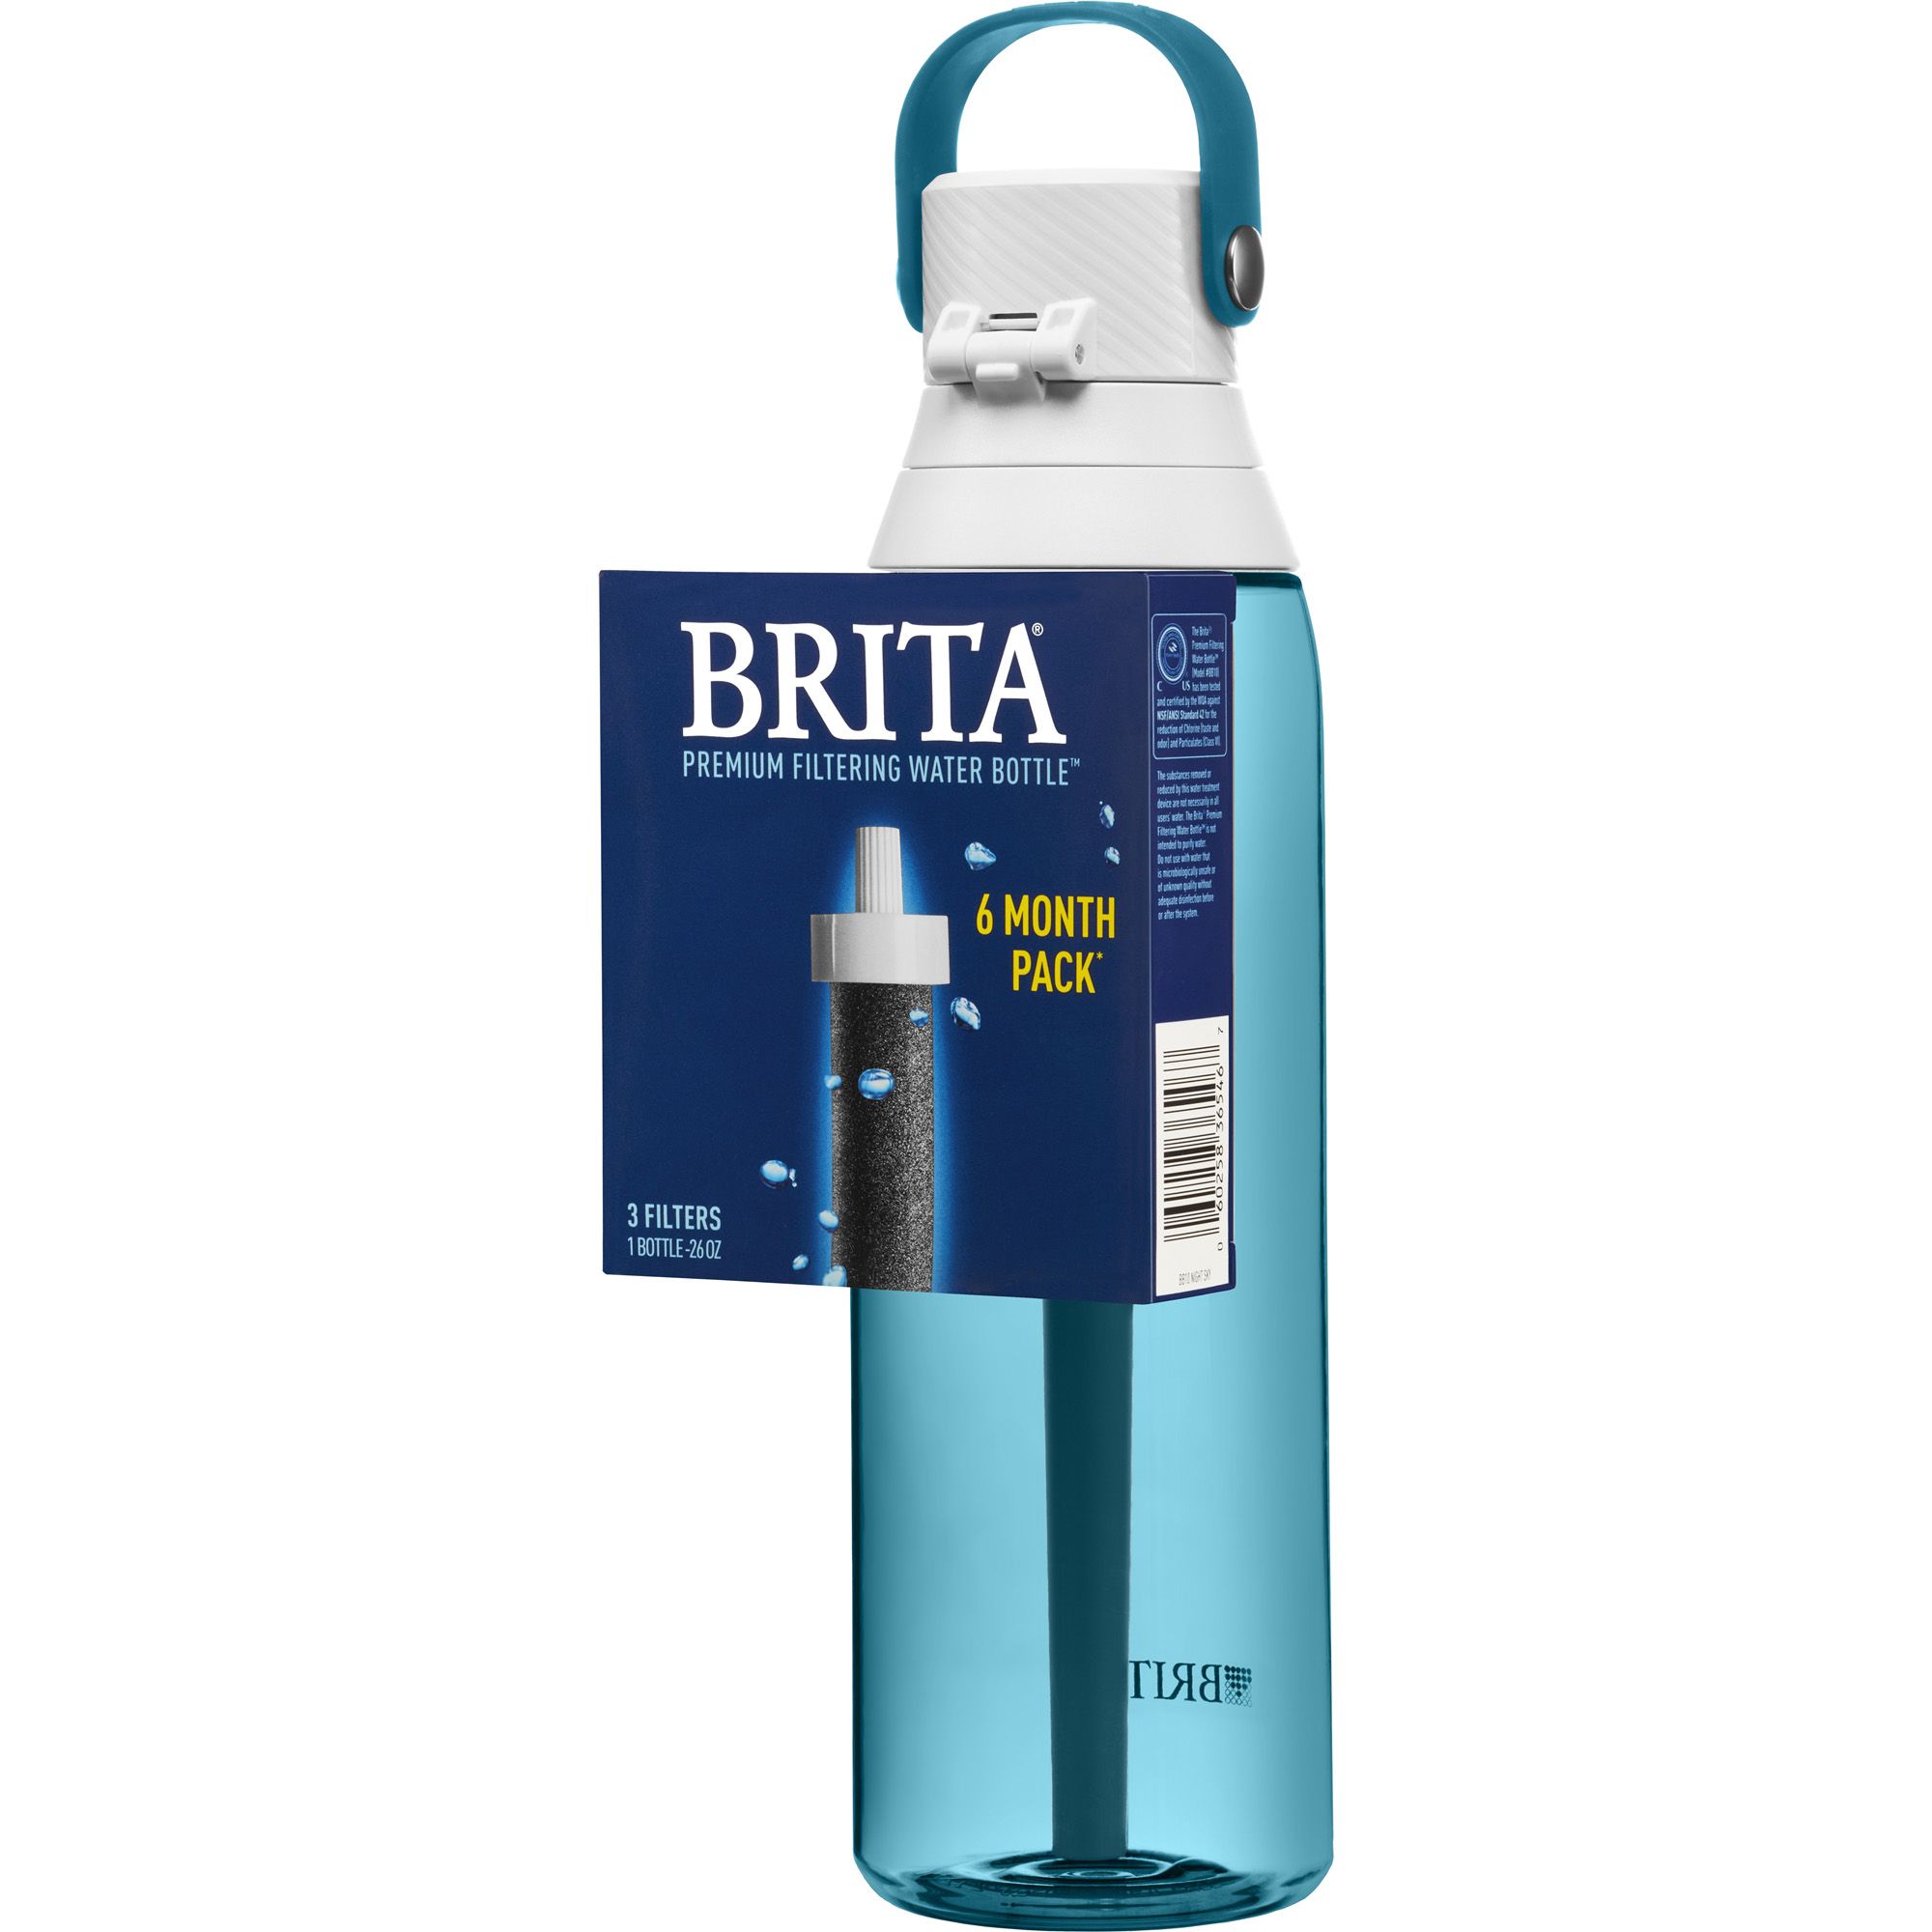 BRITA Premium BPA Free Filtering Water Bottle with 1 Filter 26 oz